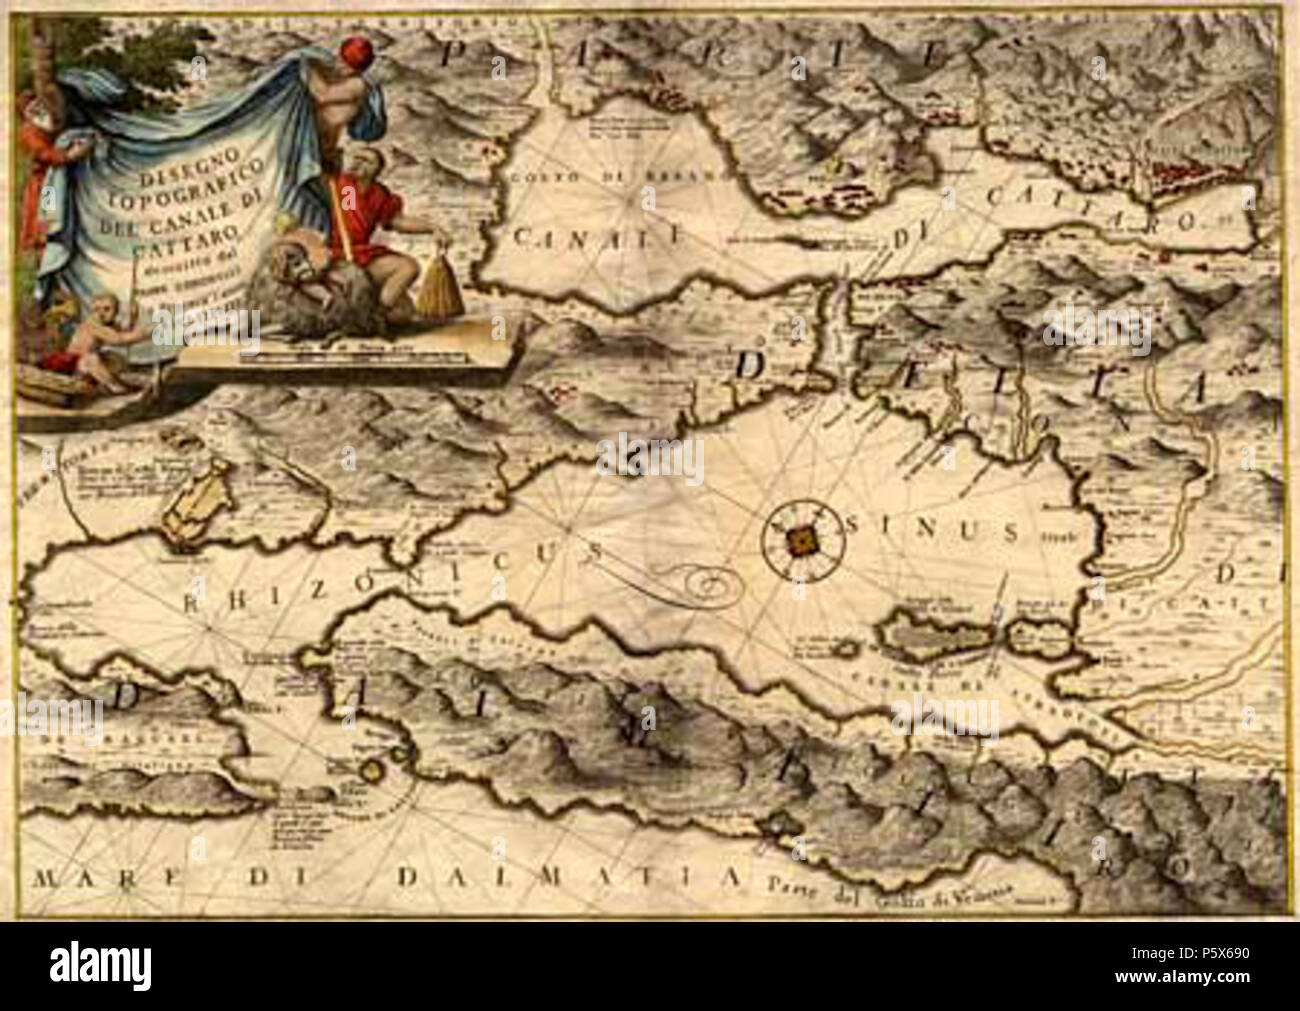 N/A. Deutsch : Disegno topografico del canale di Cattaro Venezia, 1688 . 1688. Inconnu 381 Coronelli Banque D'Images